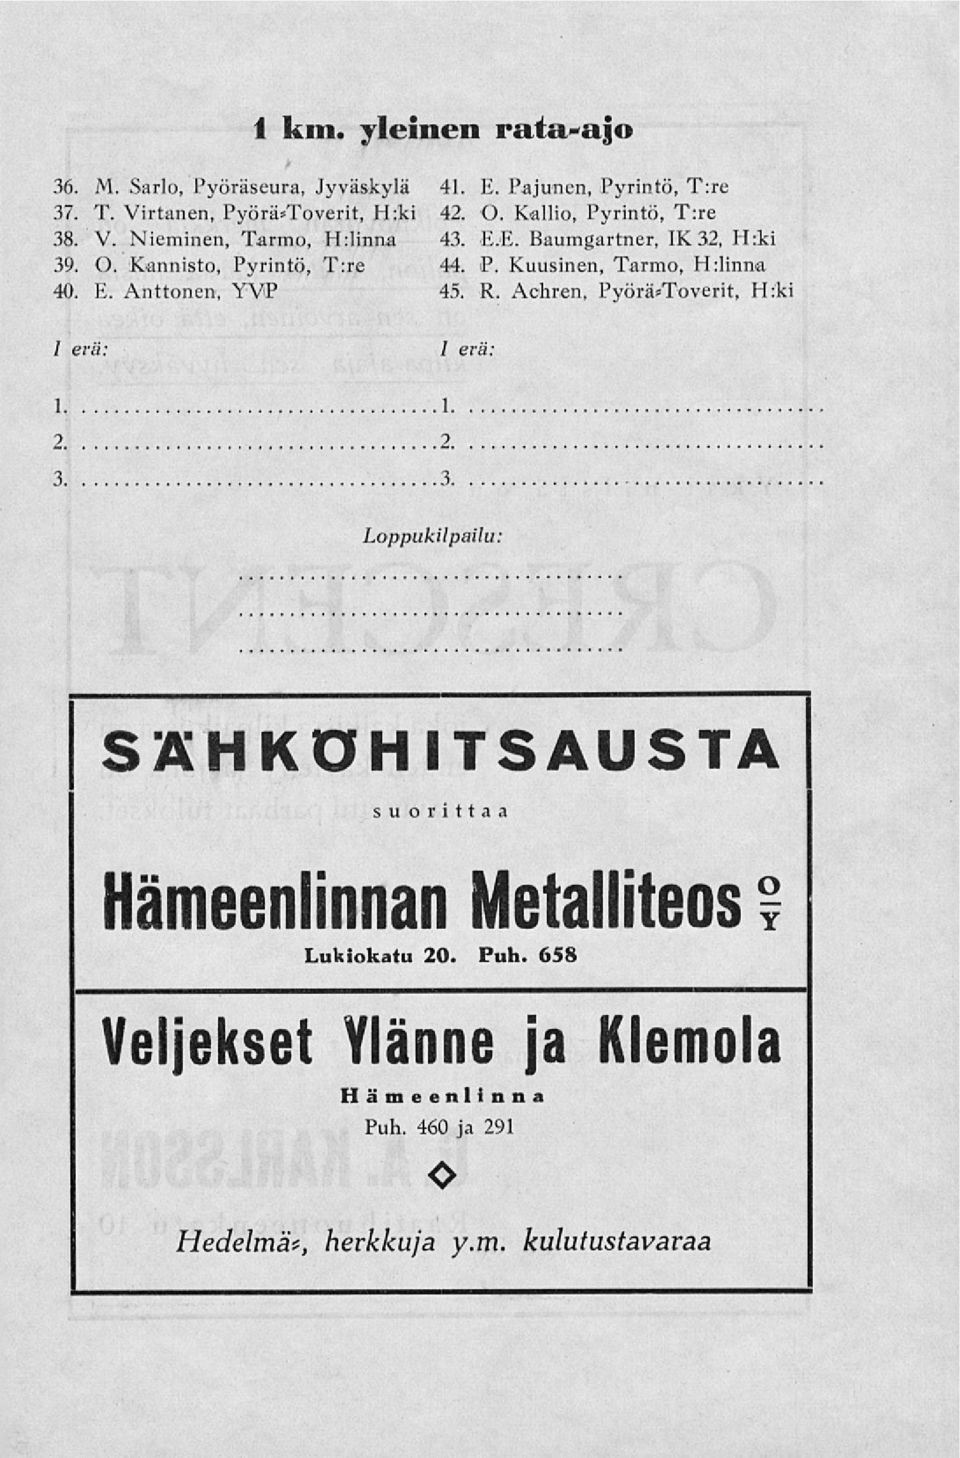 P. Kuusinen, Tarmo, Hrlinna 45. R. Achren, PyöräsToverit, H:ki / erä: 1 erä: 1. 2. 3.